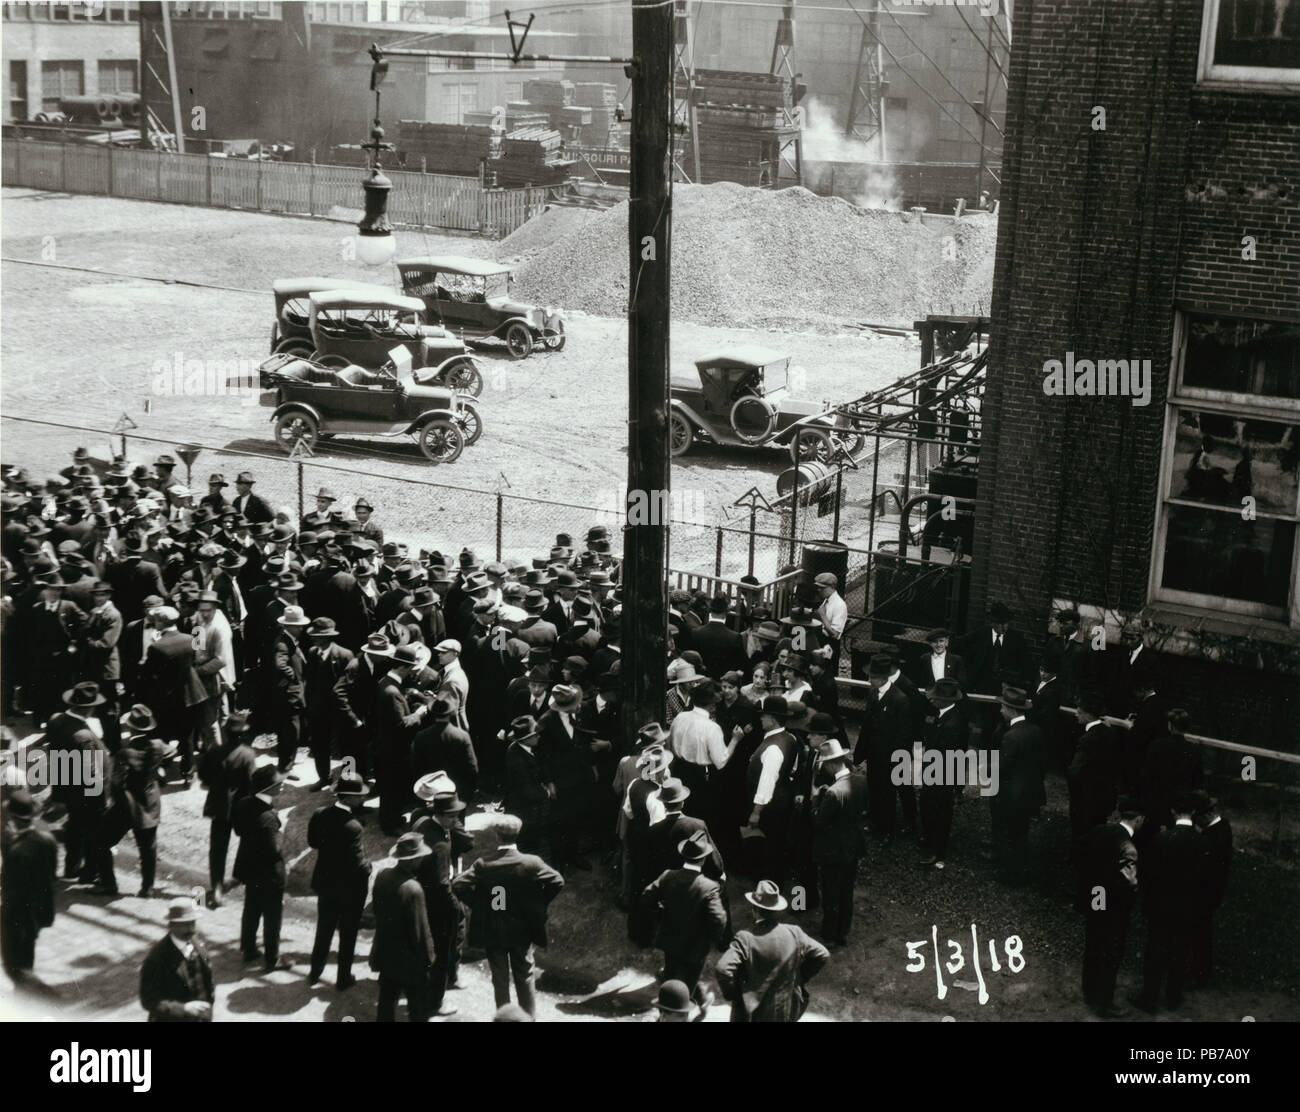 1828 Wagner Electric Company sciopero, numerose persone si sono radunate fuori dall'edificio, alcuni in conflittuale pone come essi converse gli uni con gli altri. Il 3 maggio 1918 Foto Stock